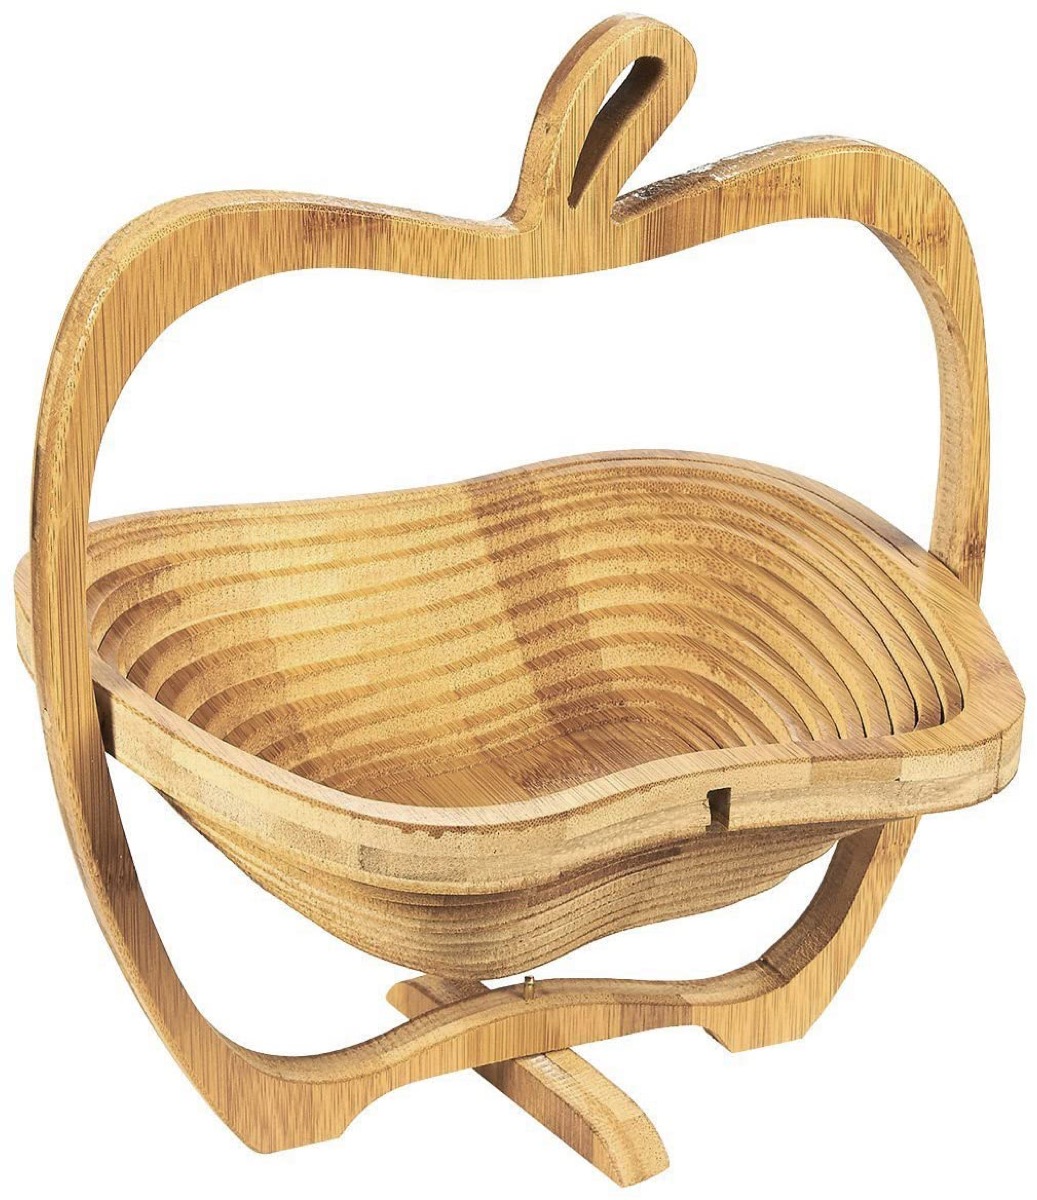 wooden apple-shaped basket